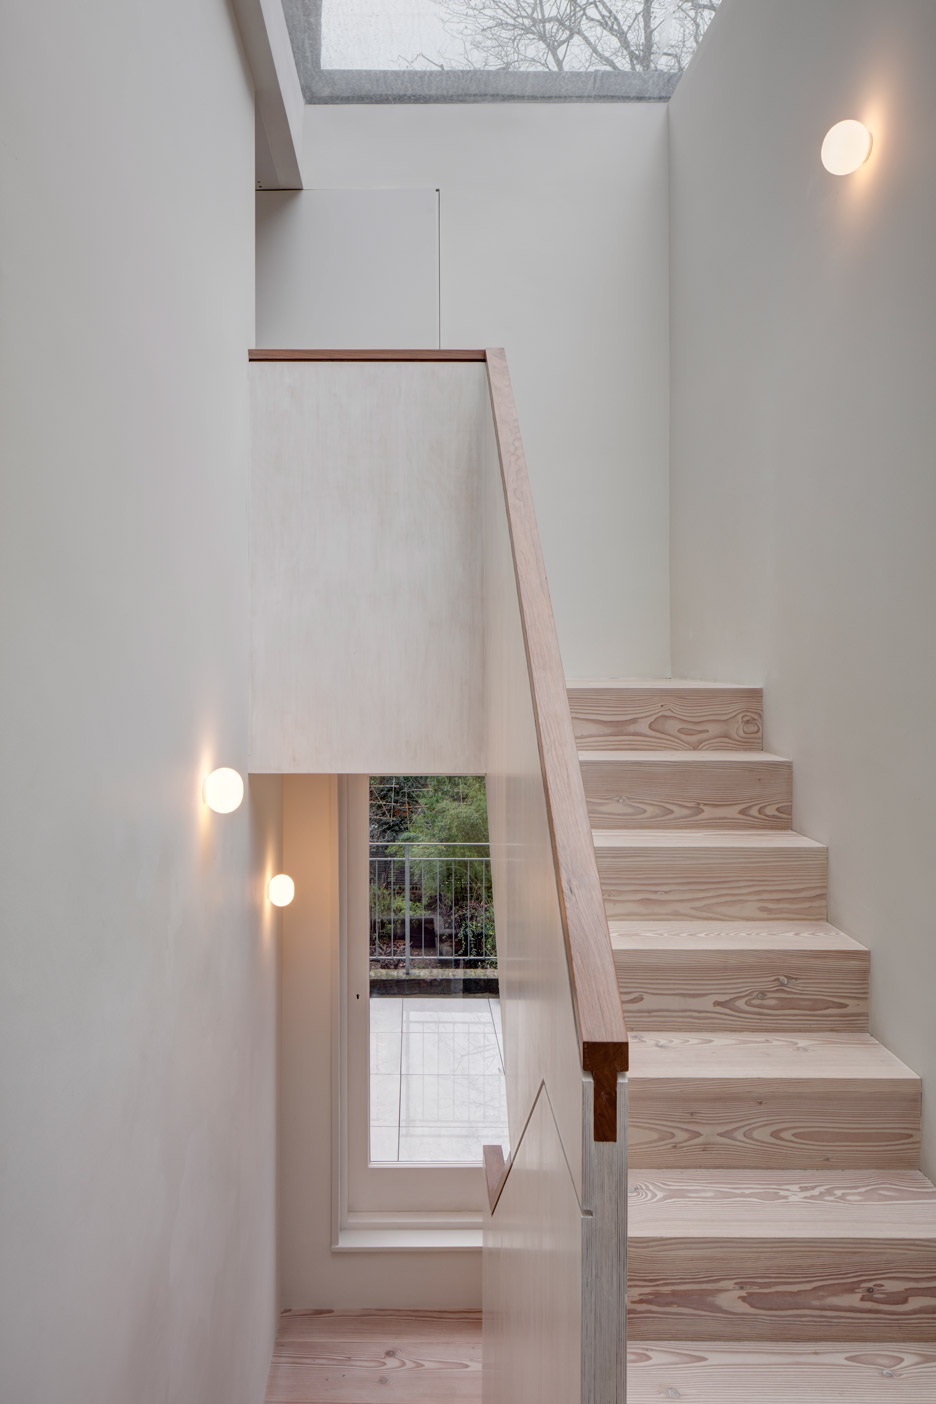 Architecture studio APA heeft een super mooi ontwerp gerealiseerd voor een woning in Londen. De douglashouten trap is gecombineerd met strakke witte muren, die gedecoreerd zijn met prachtige bol wandlampen. | Fotografie: Ed Reeve